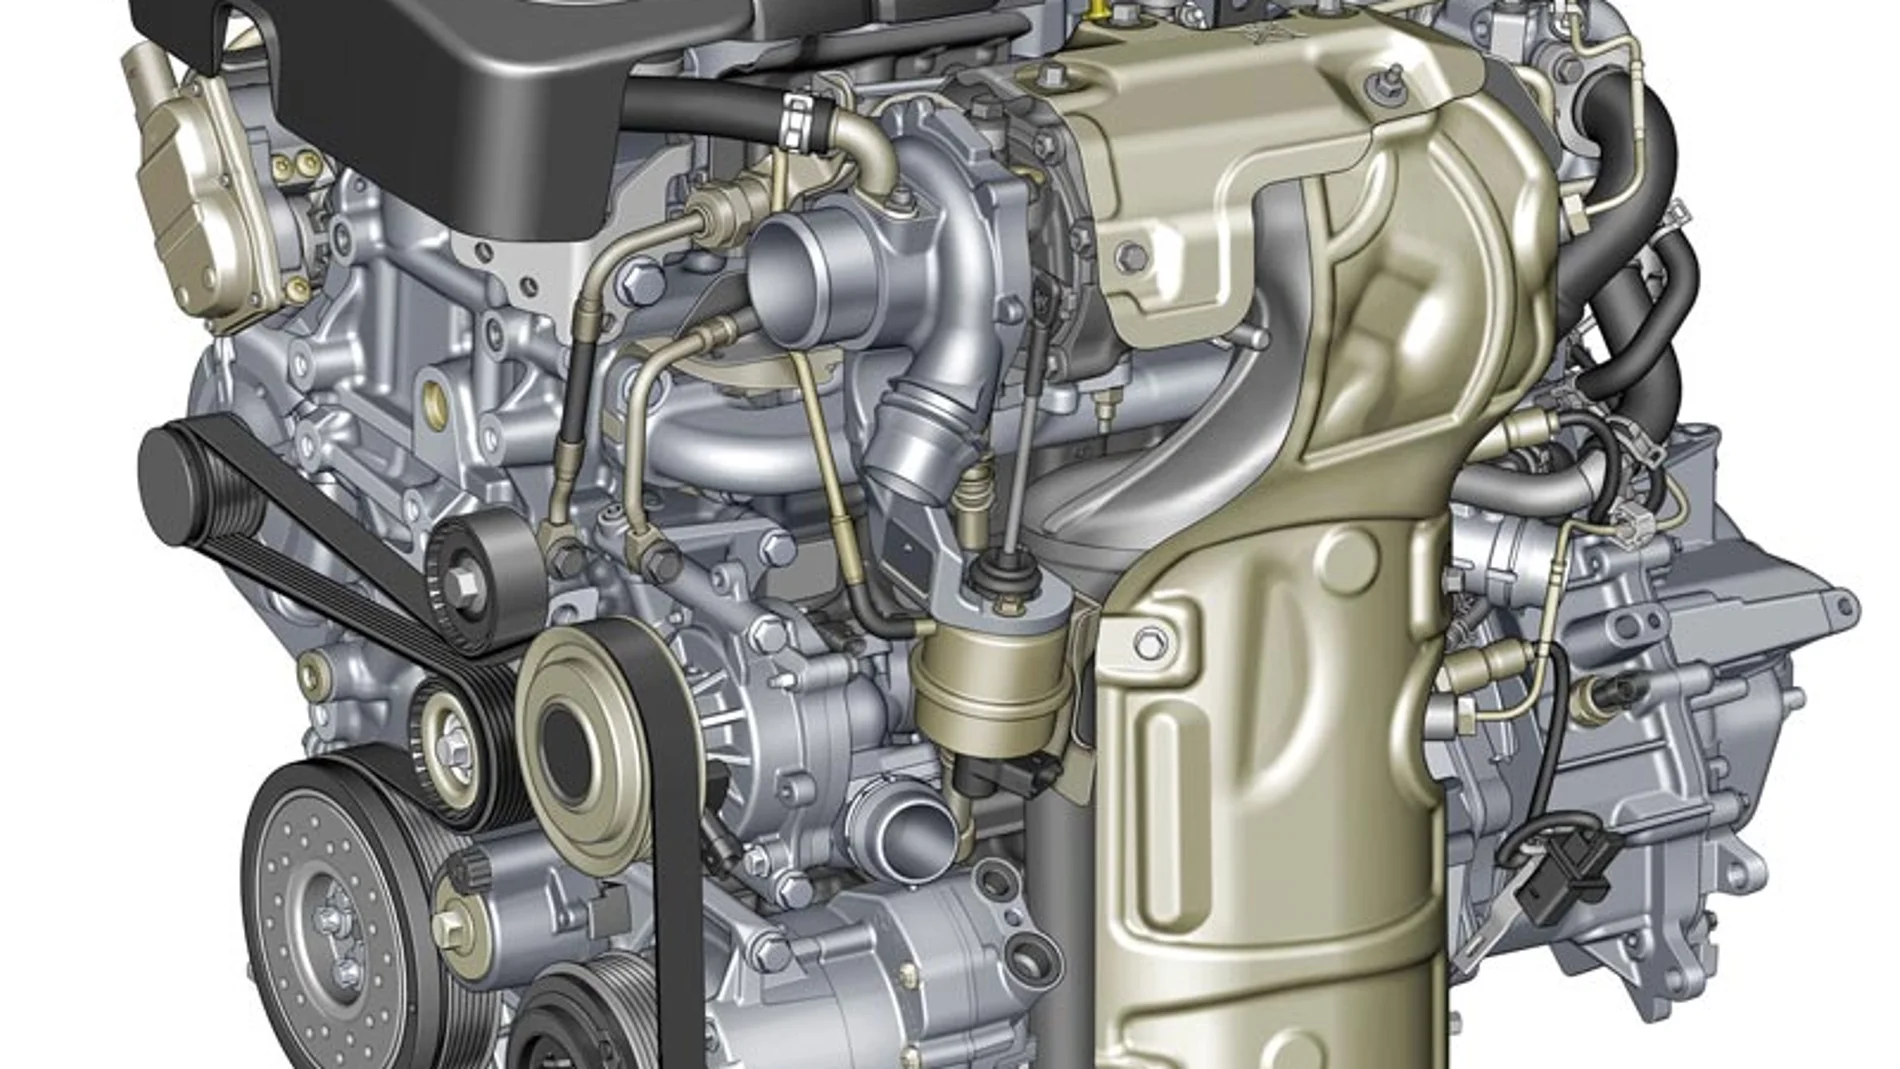 El nuevo motor está fabricado íntegramente en aluminio.